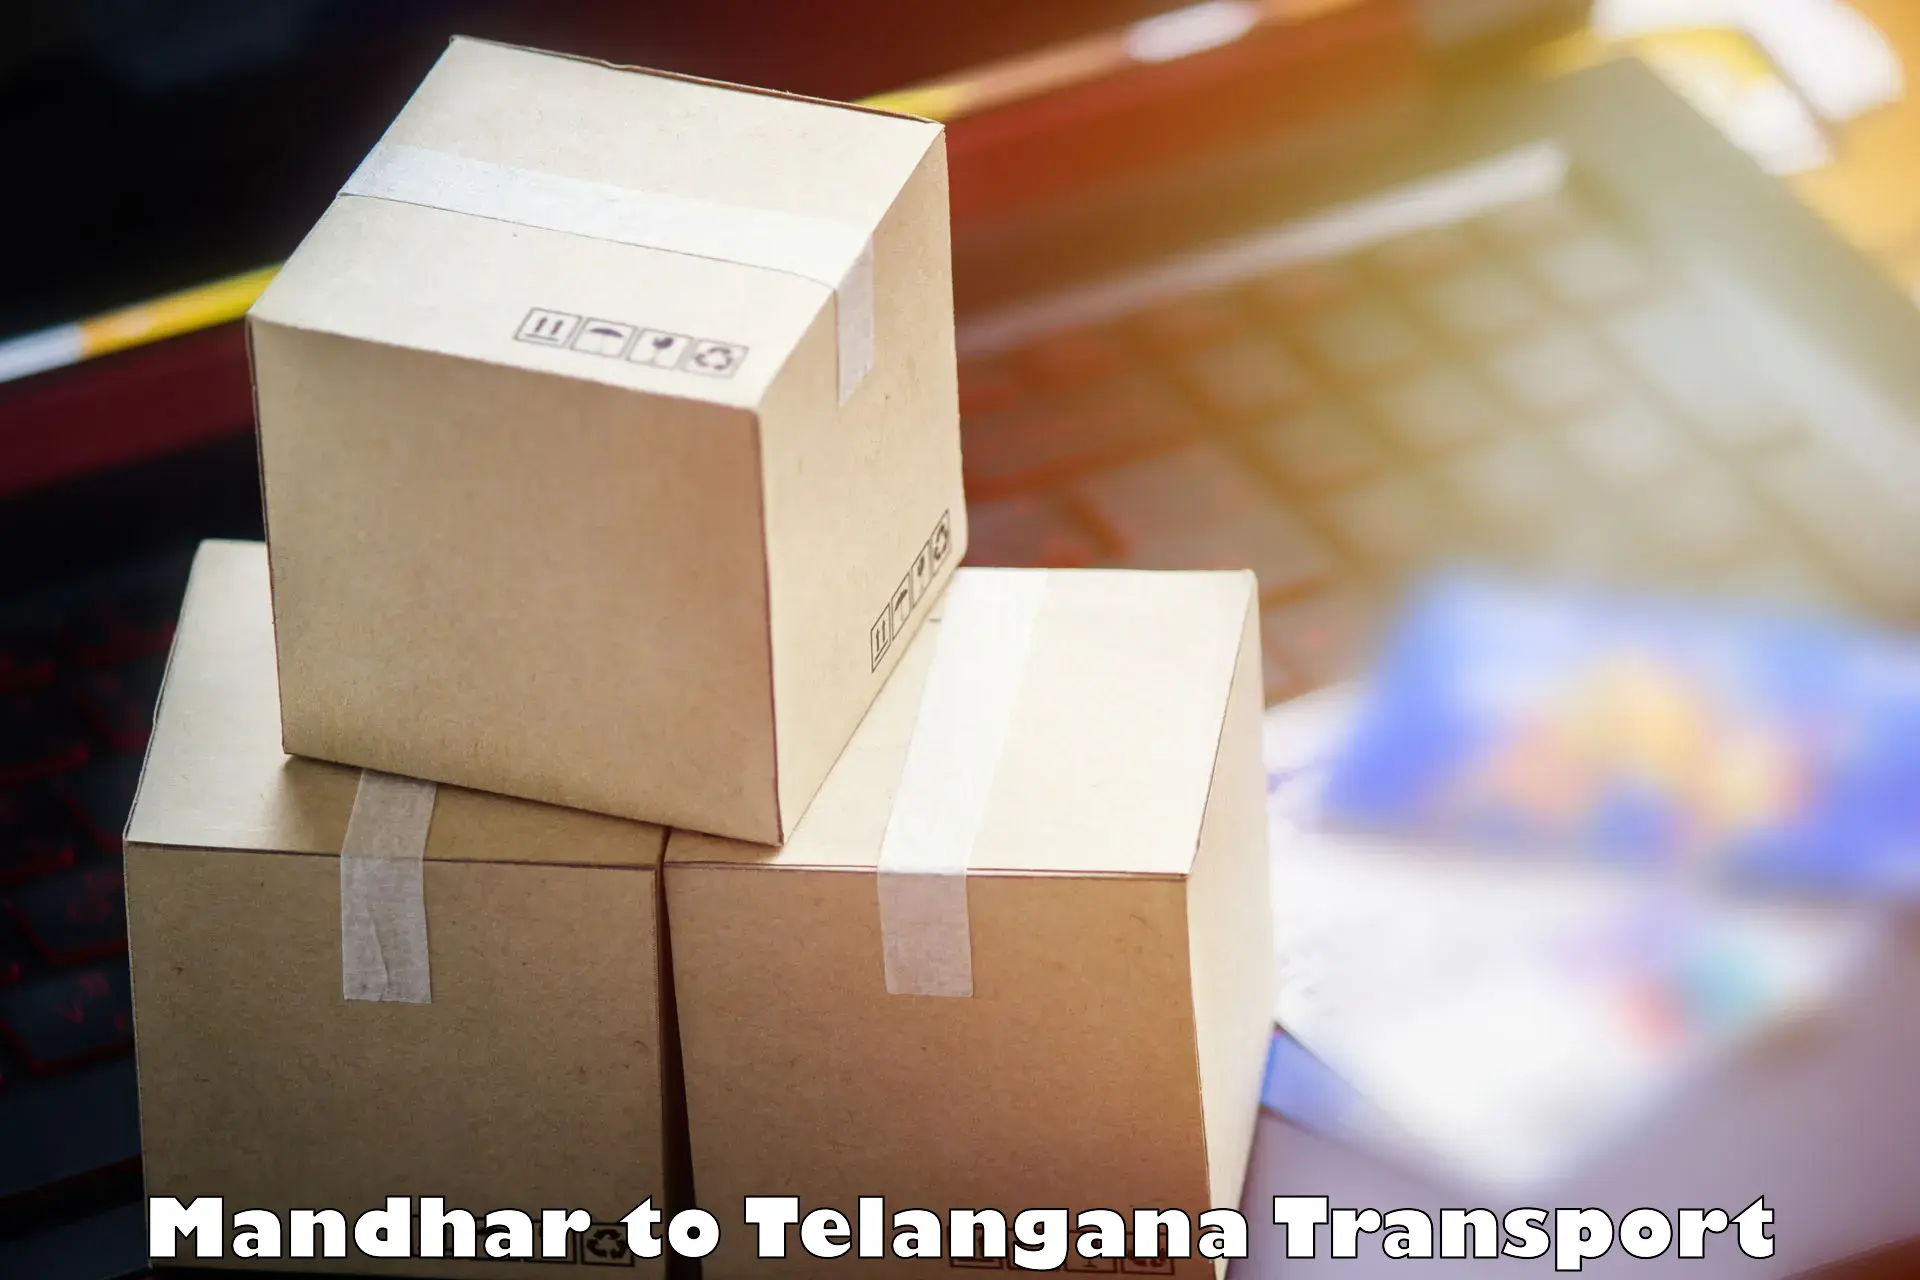 Air freight transport services Mandhar to Gangadhara